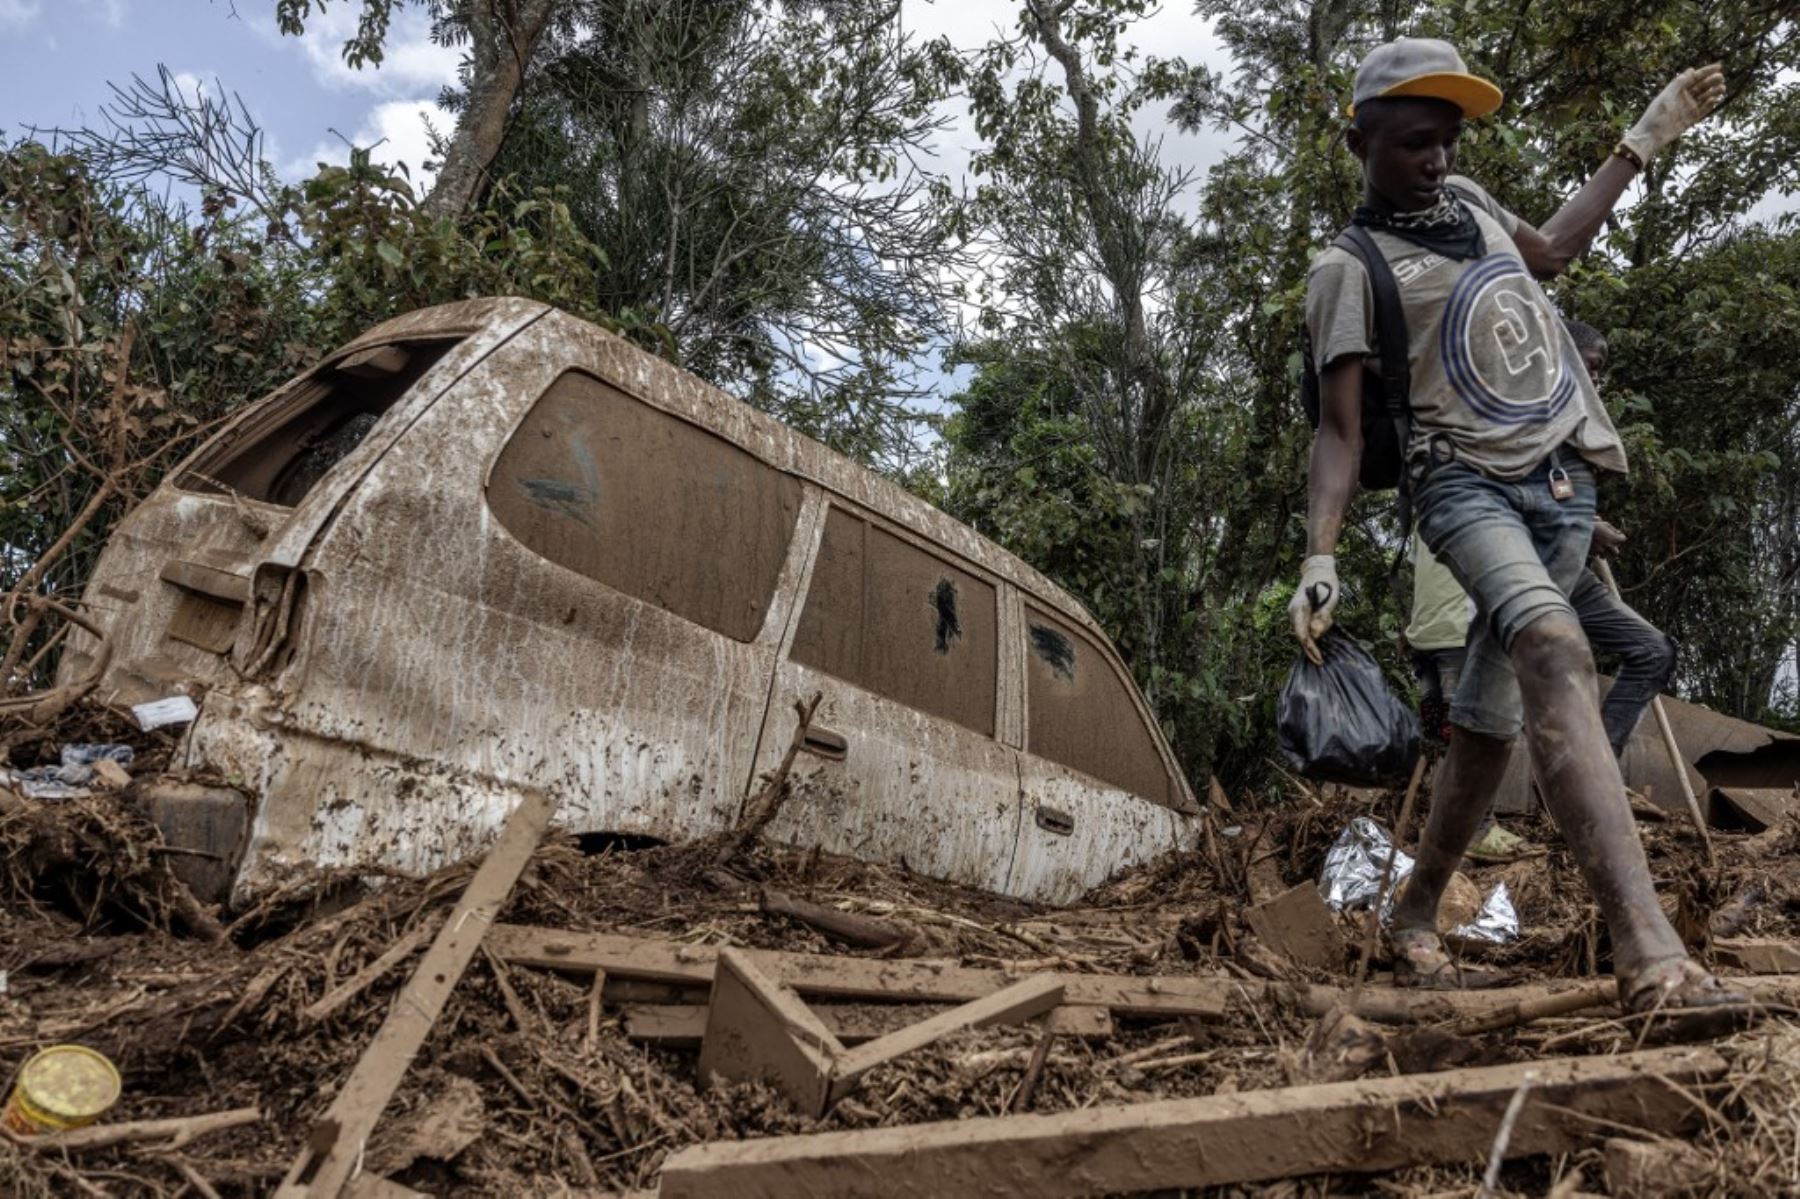 La represa se rompió cerca del pueblo de Mai Mahiu, en el valle del Rift, arrasando casas y cortando una carretera. Foto: AFP